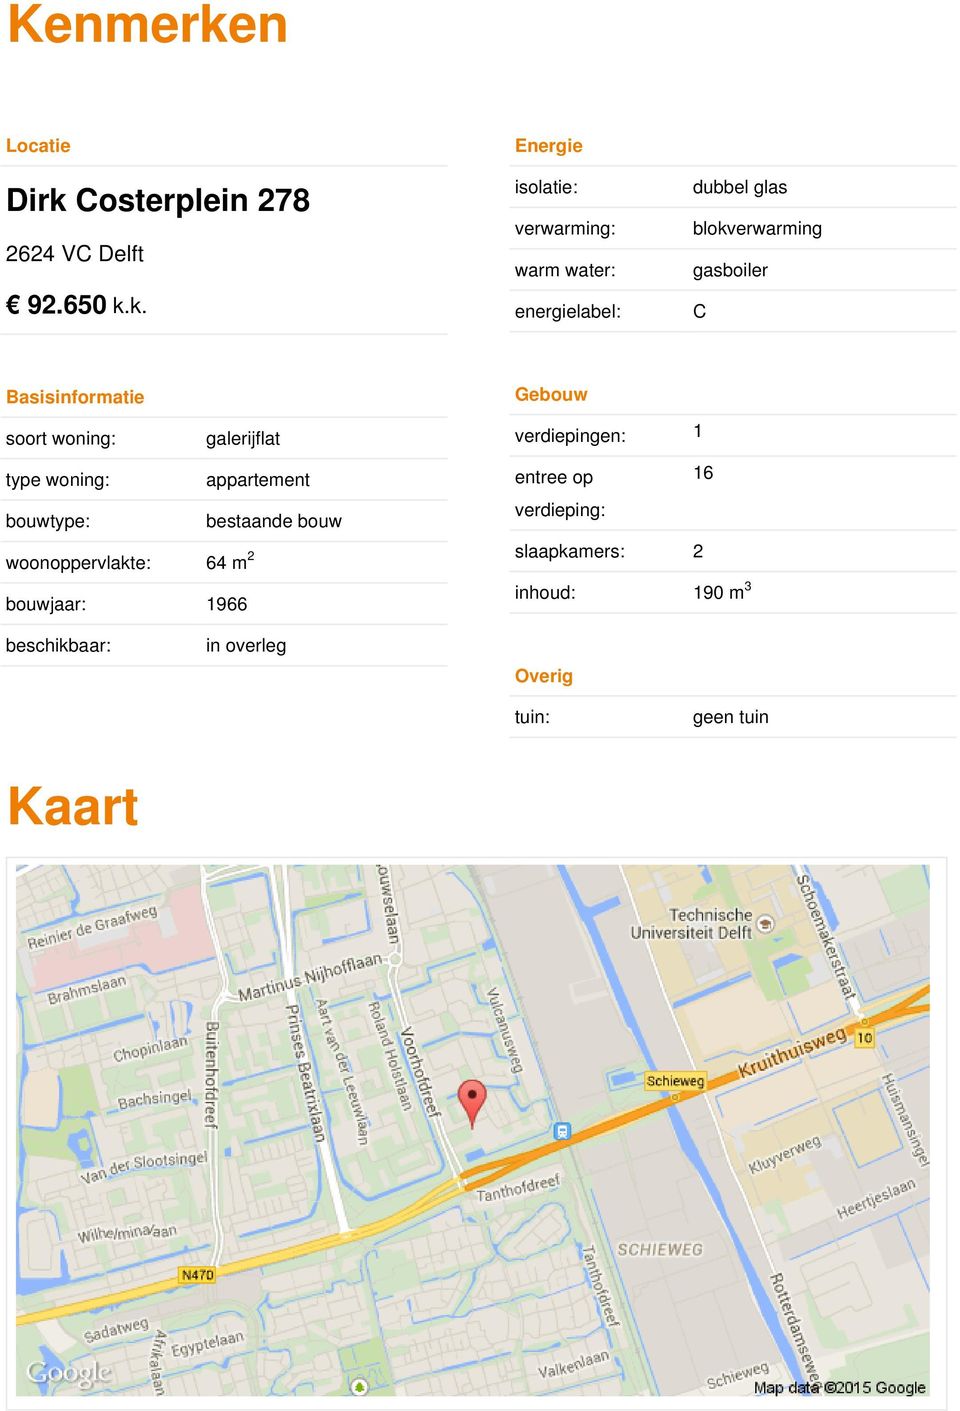 Costerplein 278 2624 VC Delft 92.650 k.